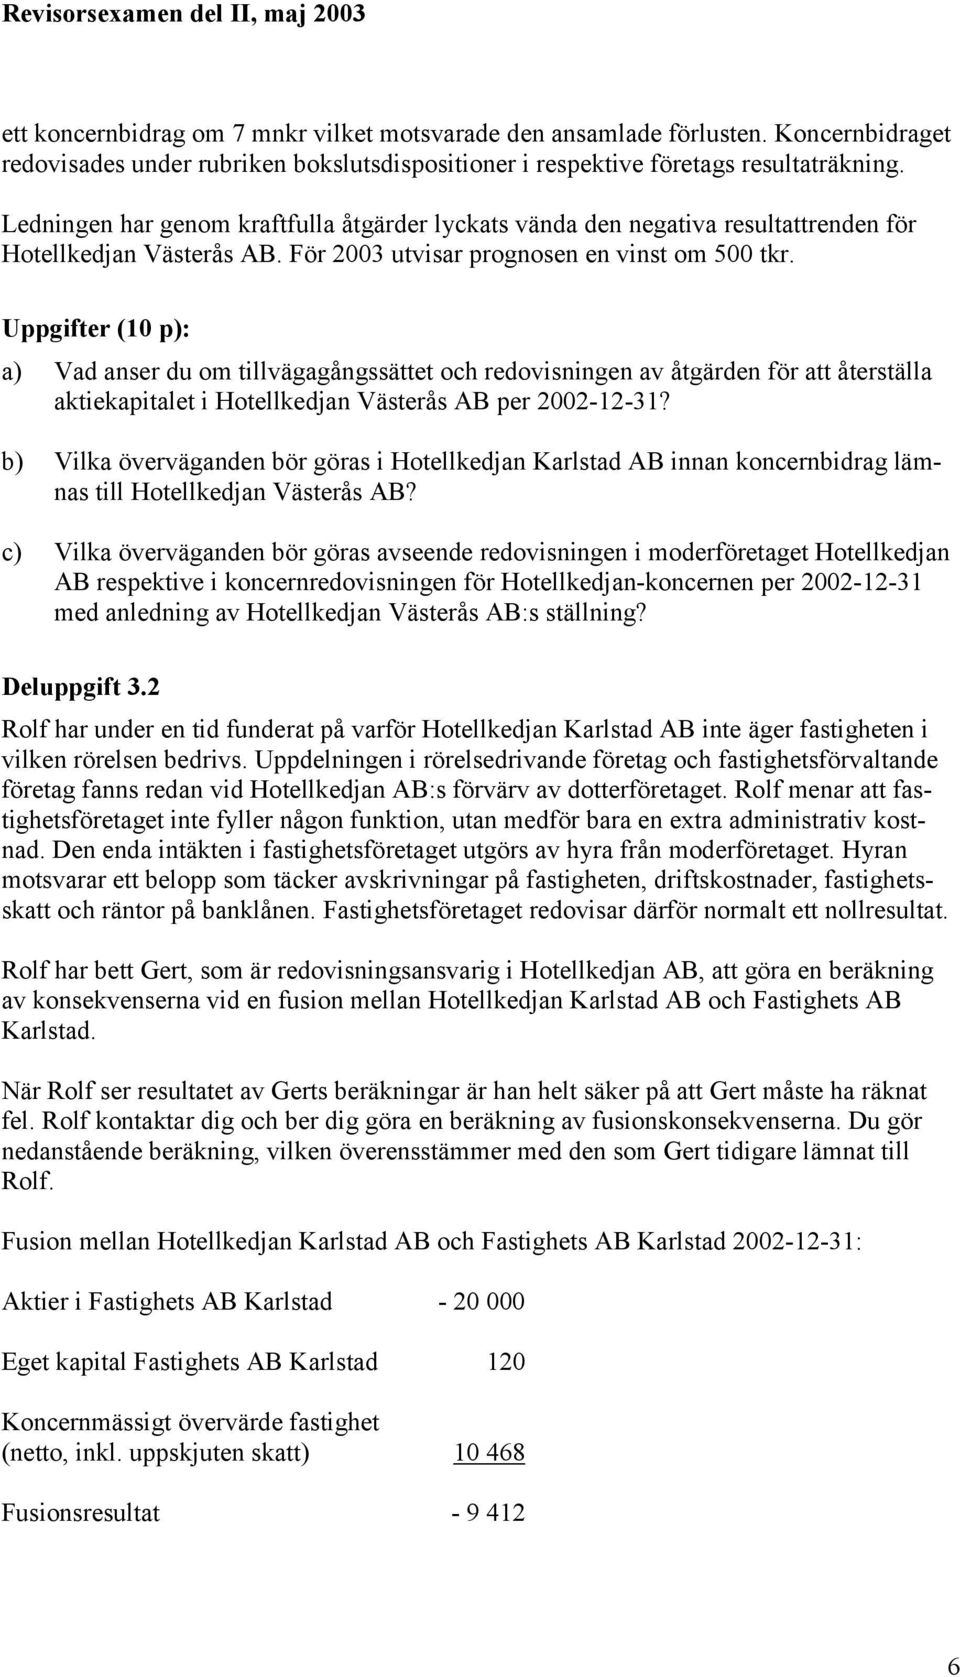 Uppgifter (10 p): a) Vad anser du om tillvägagångssättet och redovisningen av åtgärden för att återställa aktiekapitalet i Hotellkedjan Västerås AB per 2002-12-31?